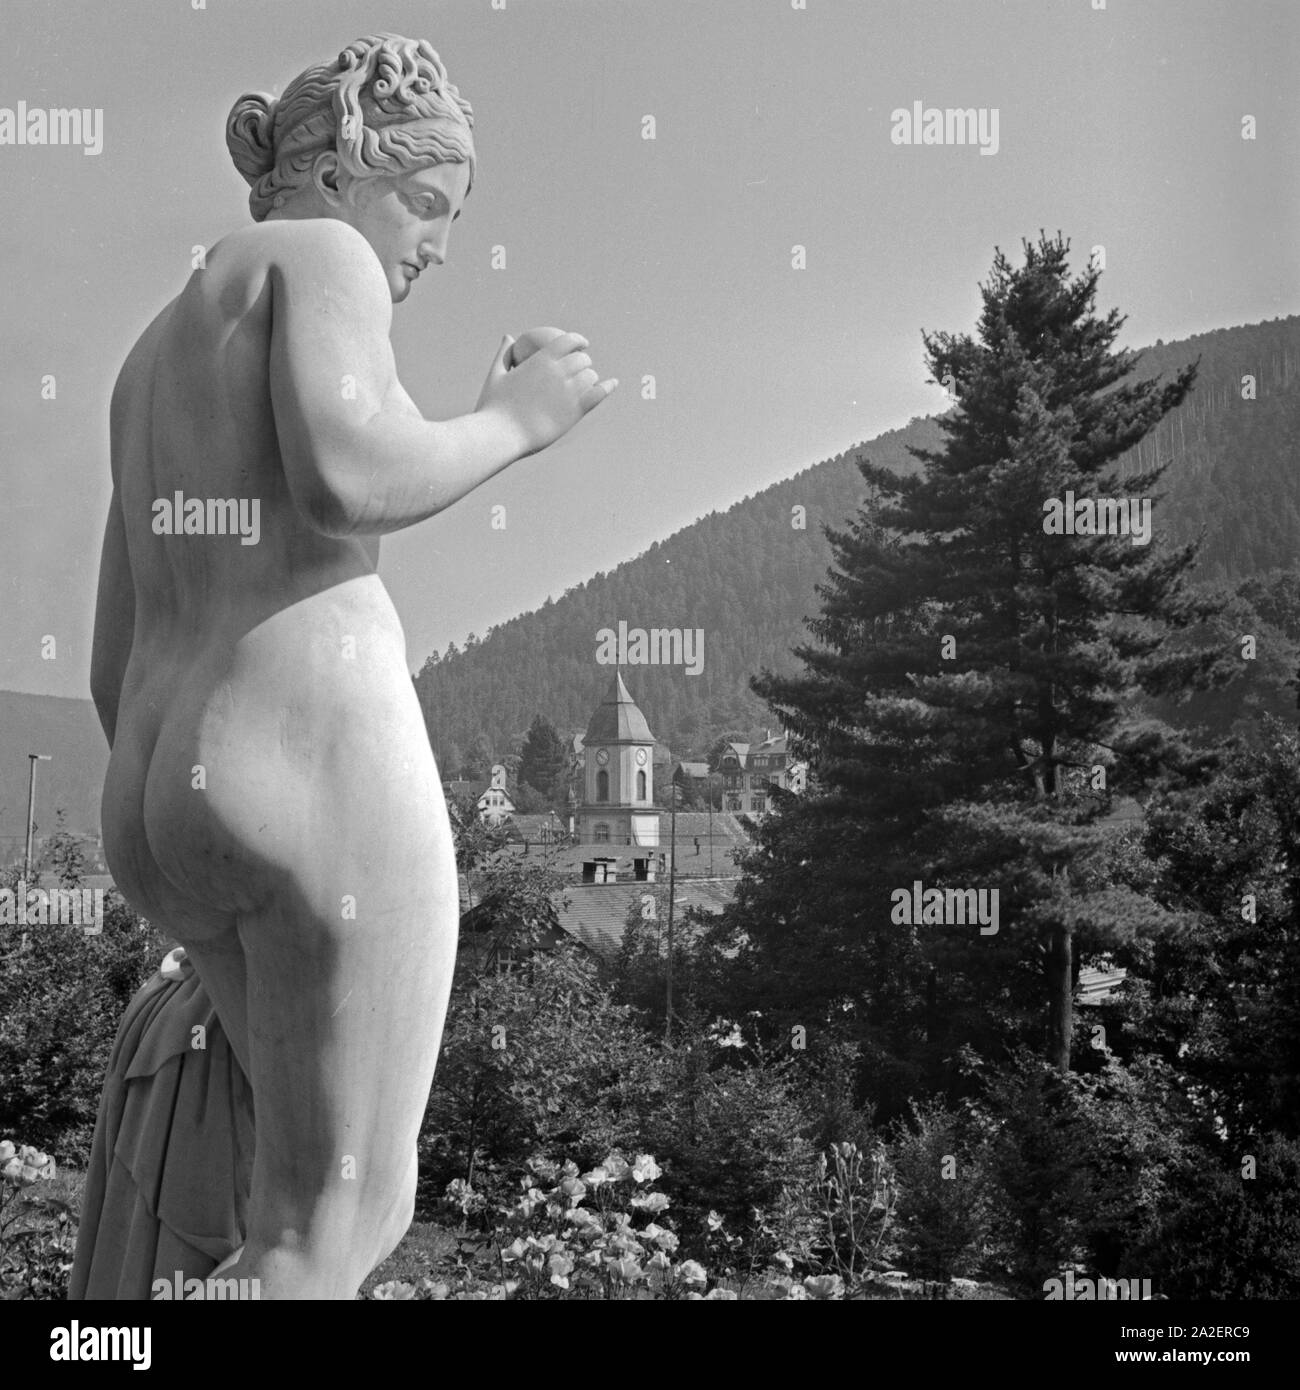 Frauenstatue vor der Stadtansicht von Wildbad im Schwarzwald, Deutschland 1930er Jahre. Scultura di una femmina di fronte alla città di Wildbad nella Foresta Nera, Germania 1930s. Foto Stock